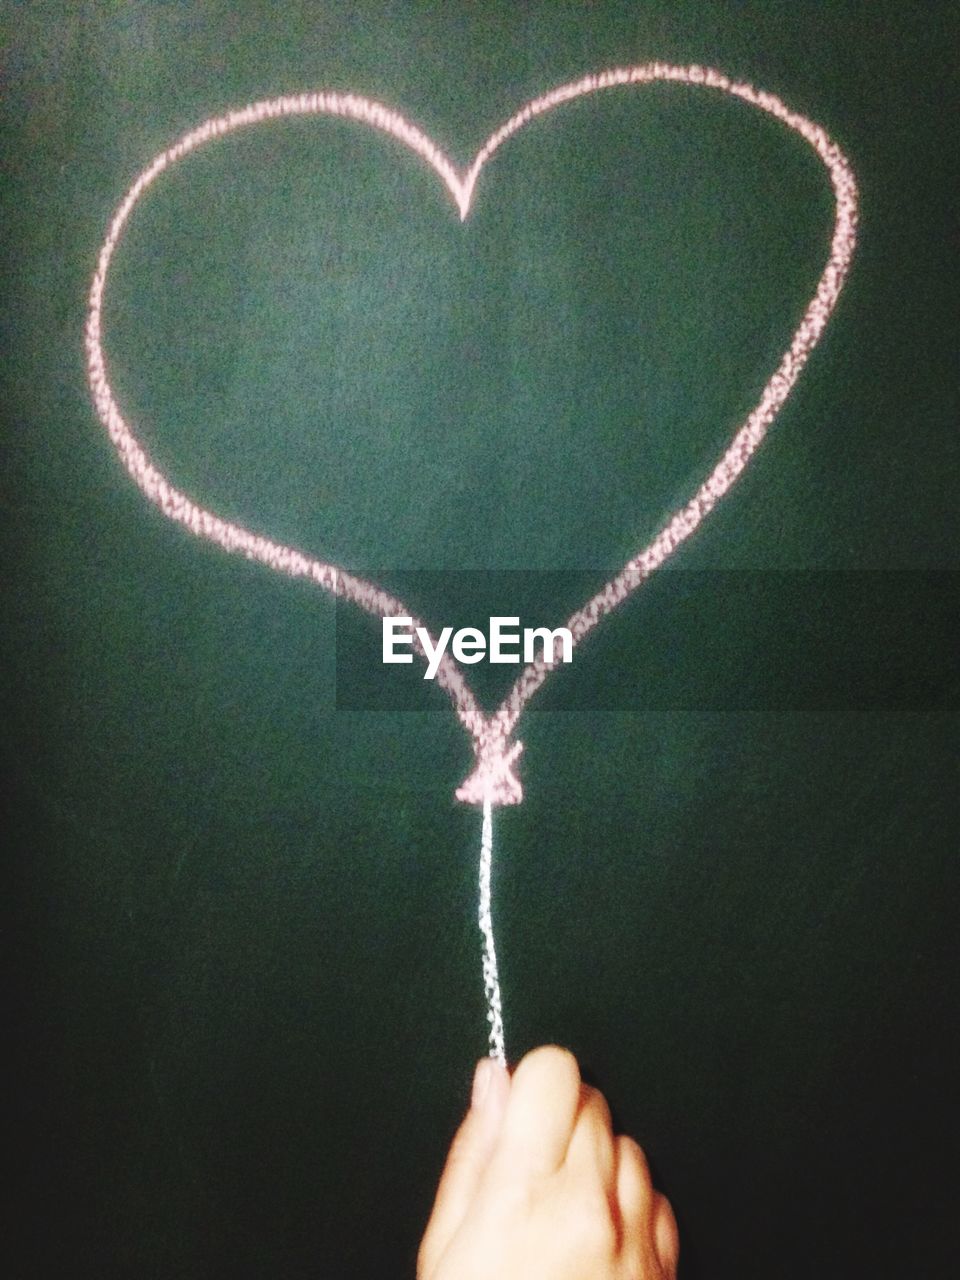 Heart shape drawing on blackboard